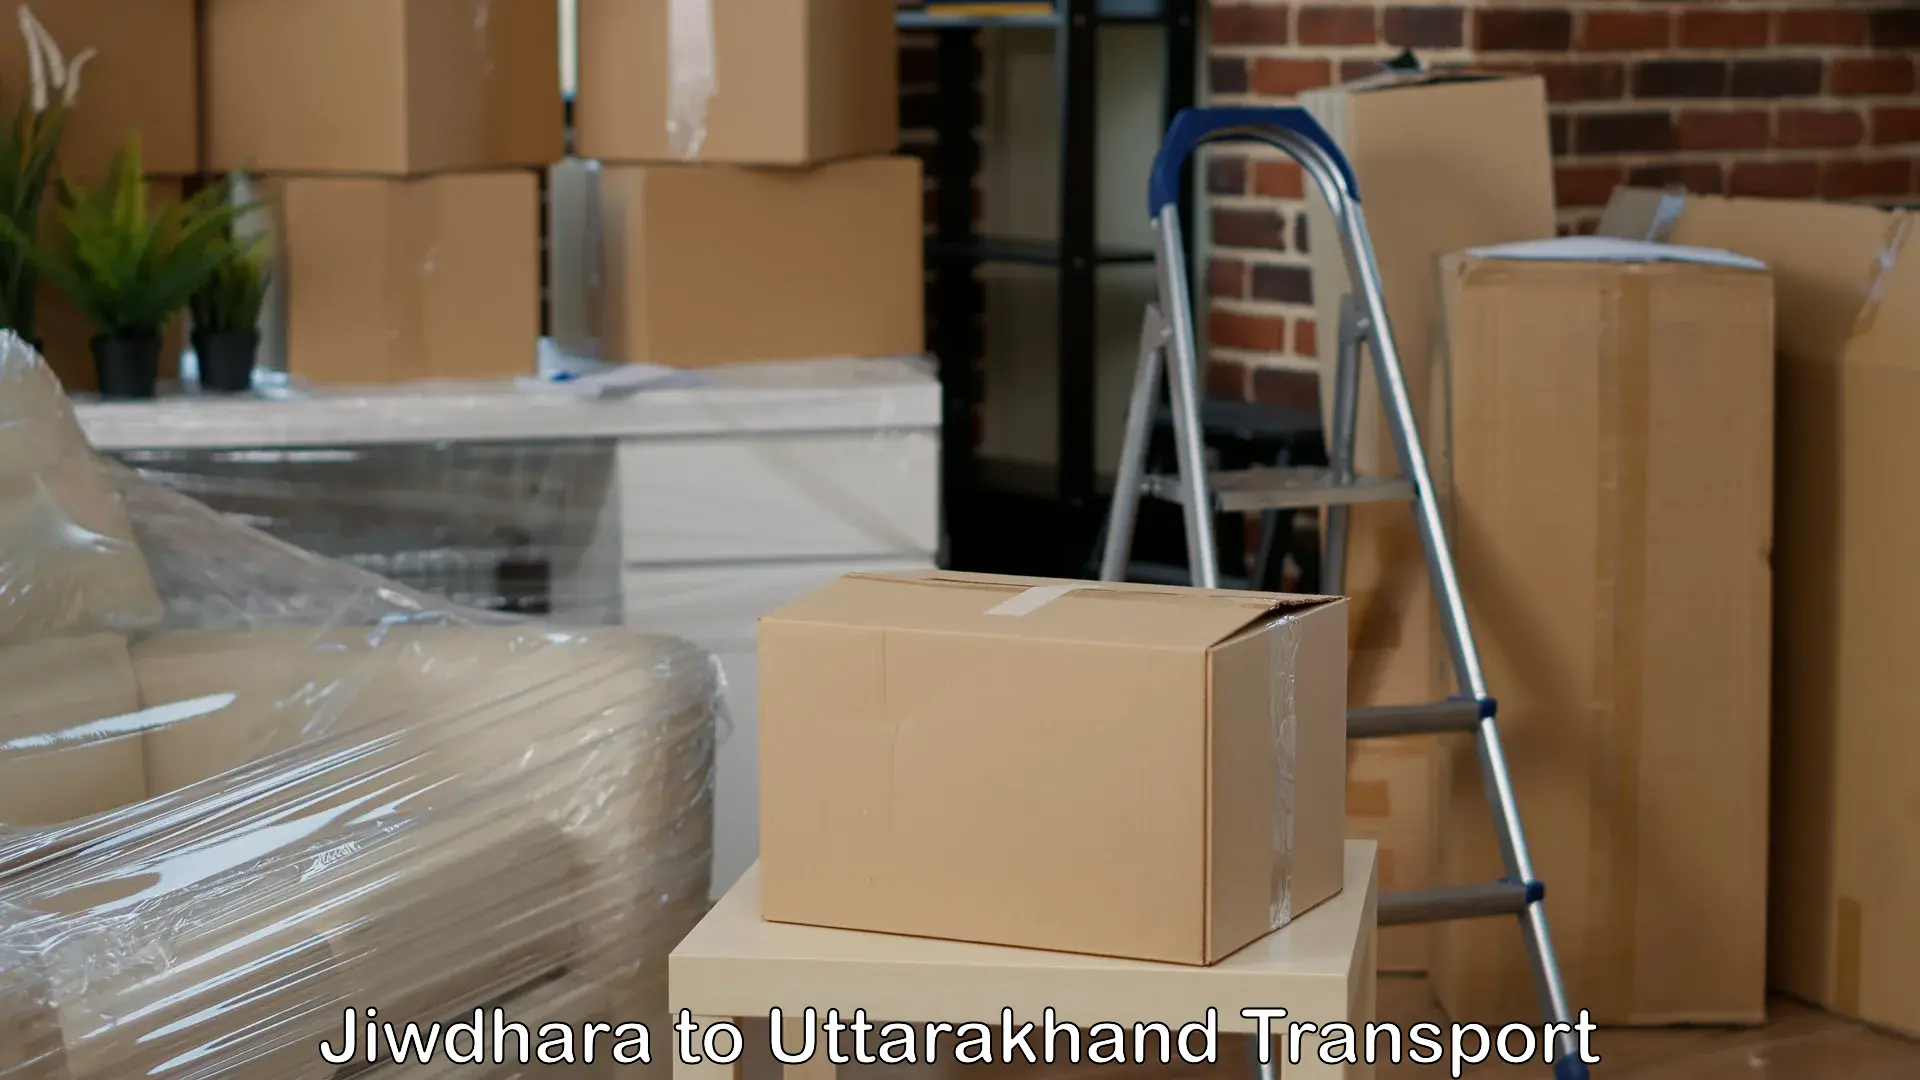 Container transport service Jiwdhara to NIT Garhwal